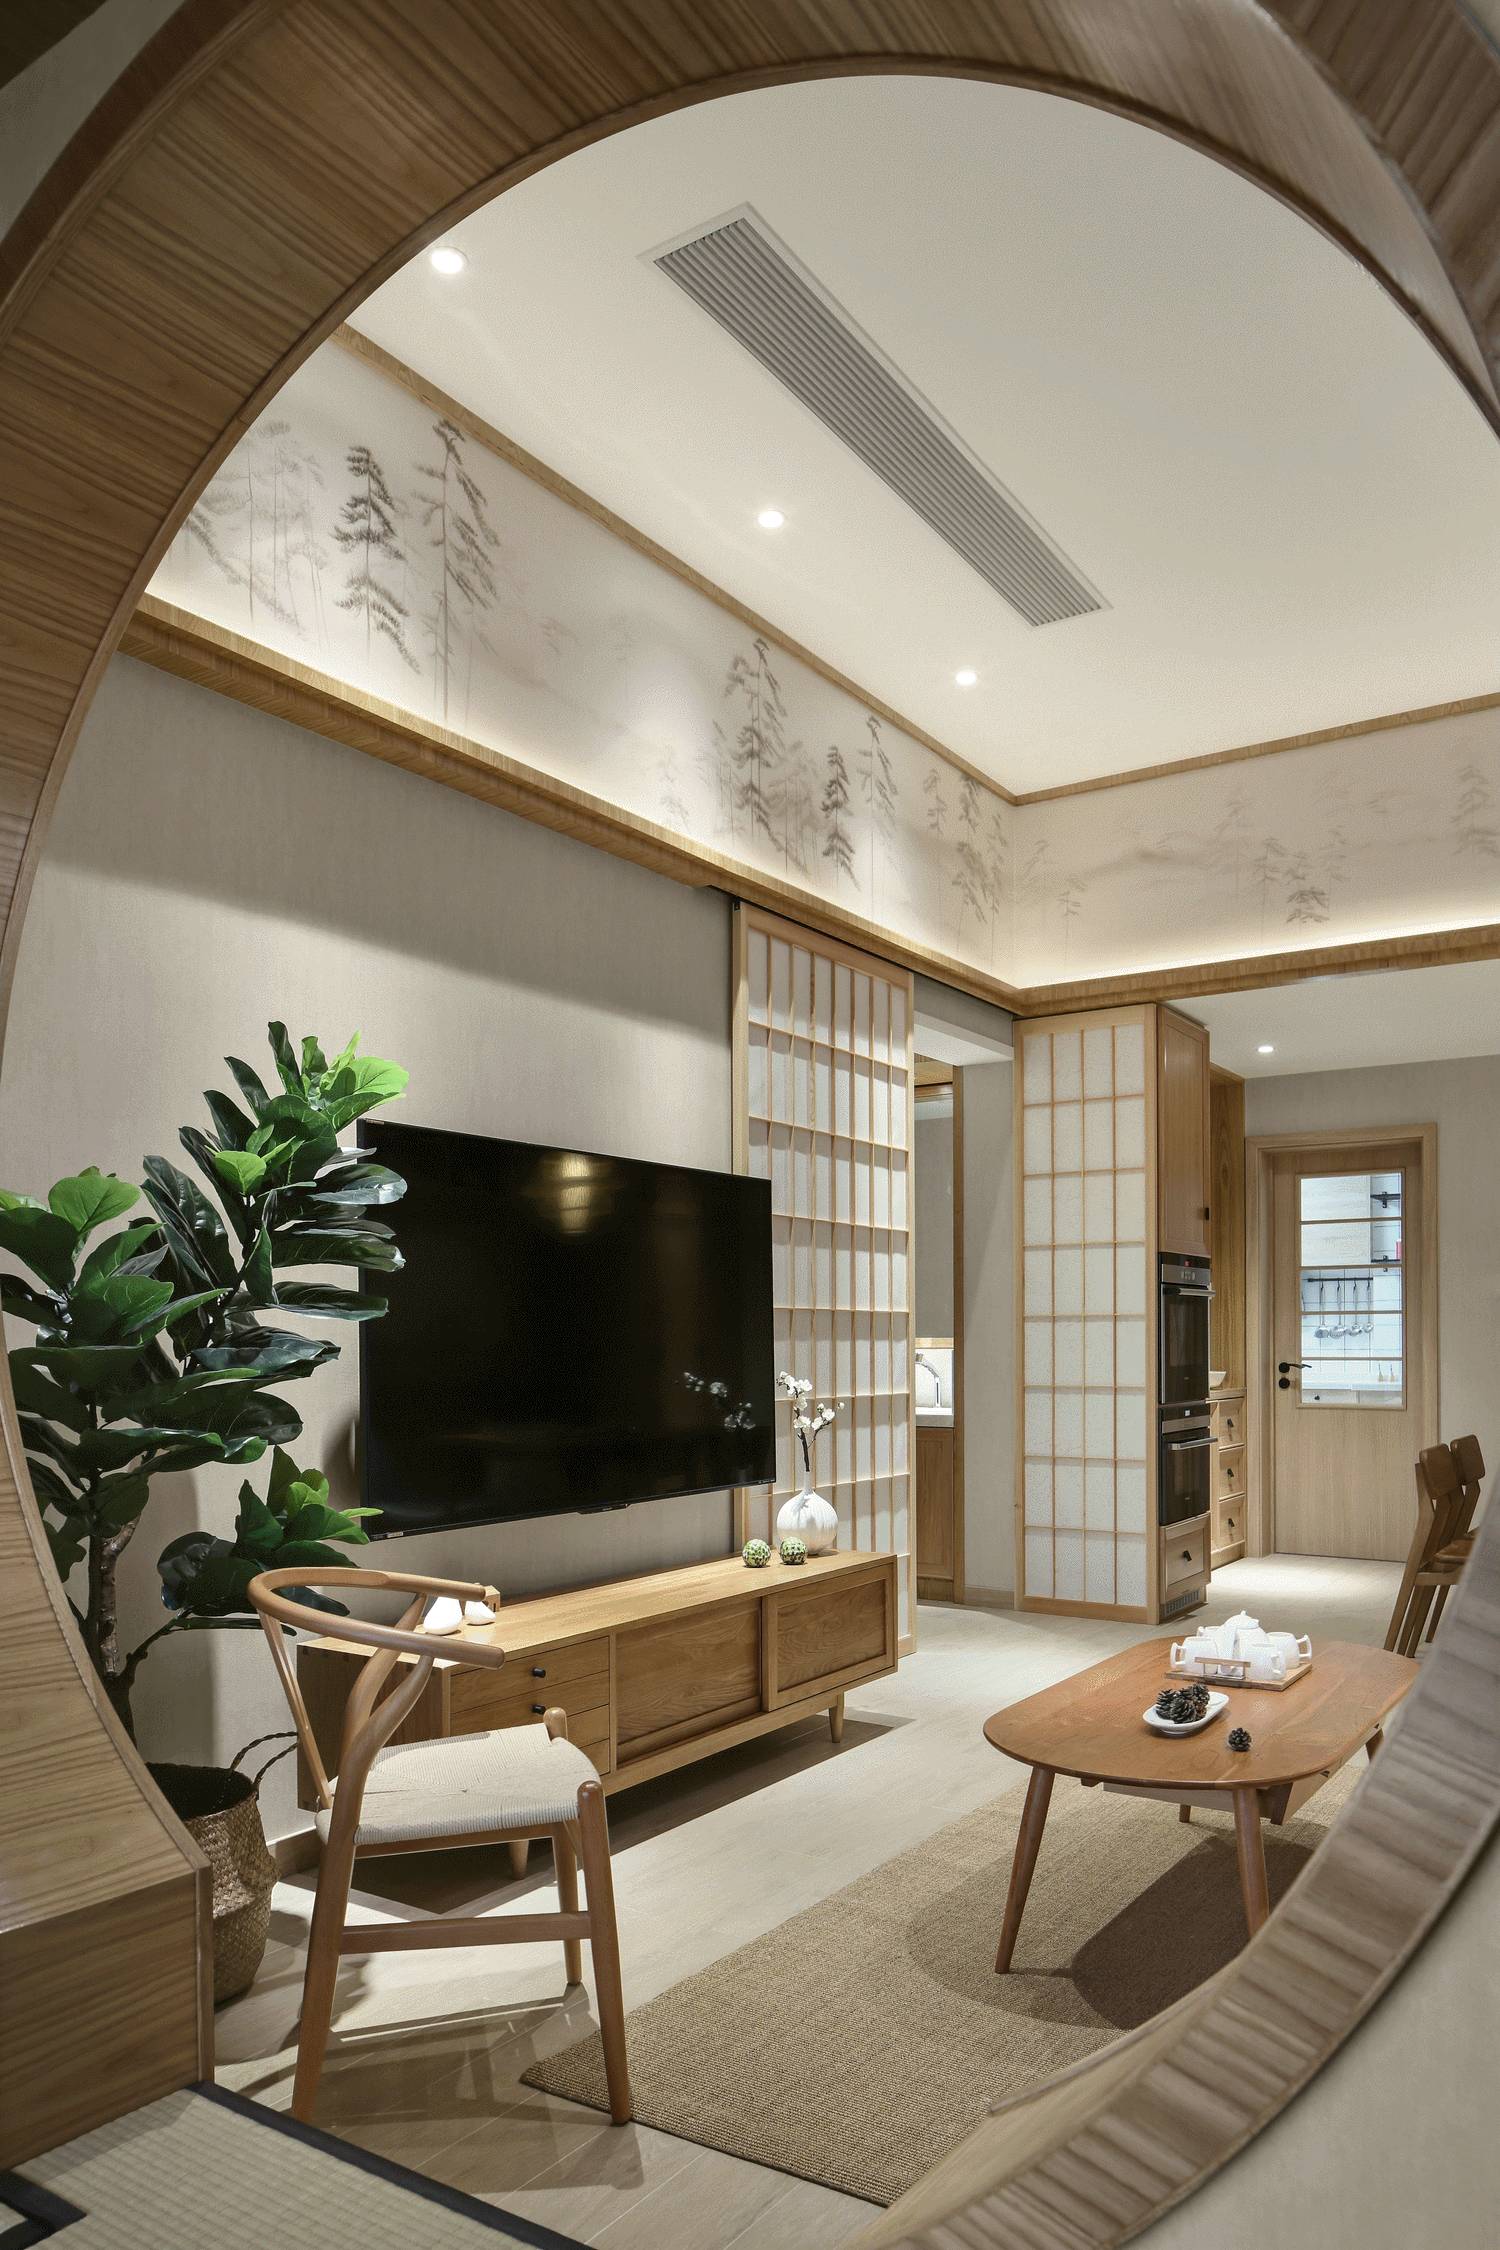 日式简约风格家装设计室内装修效果图-客厅